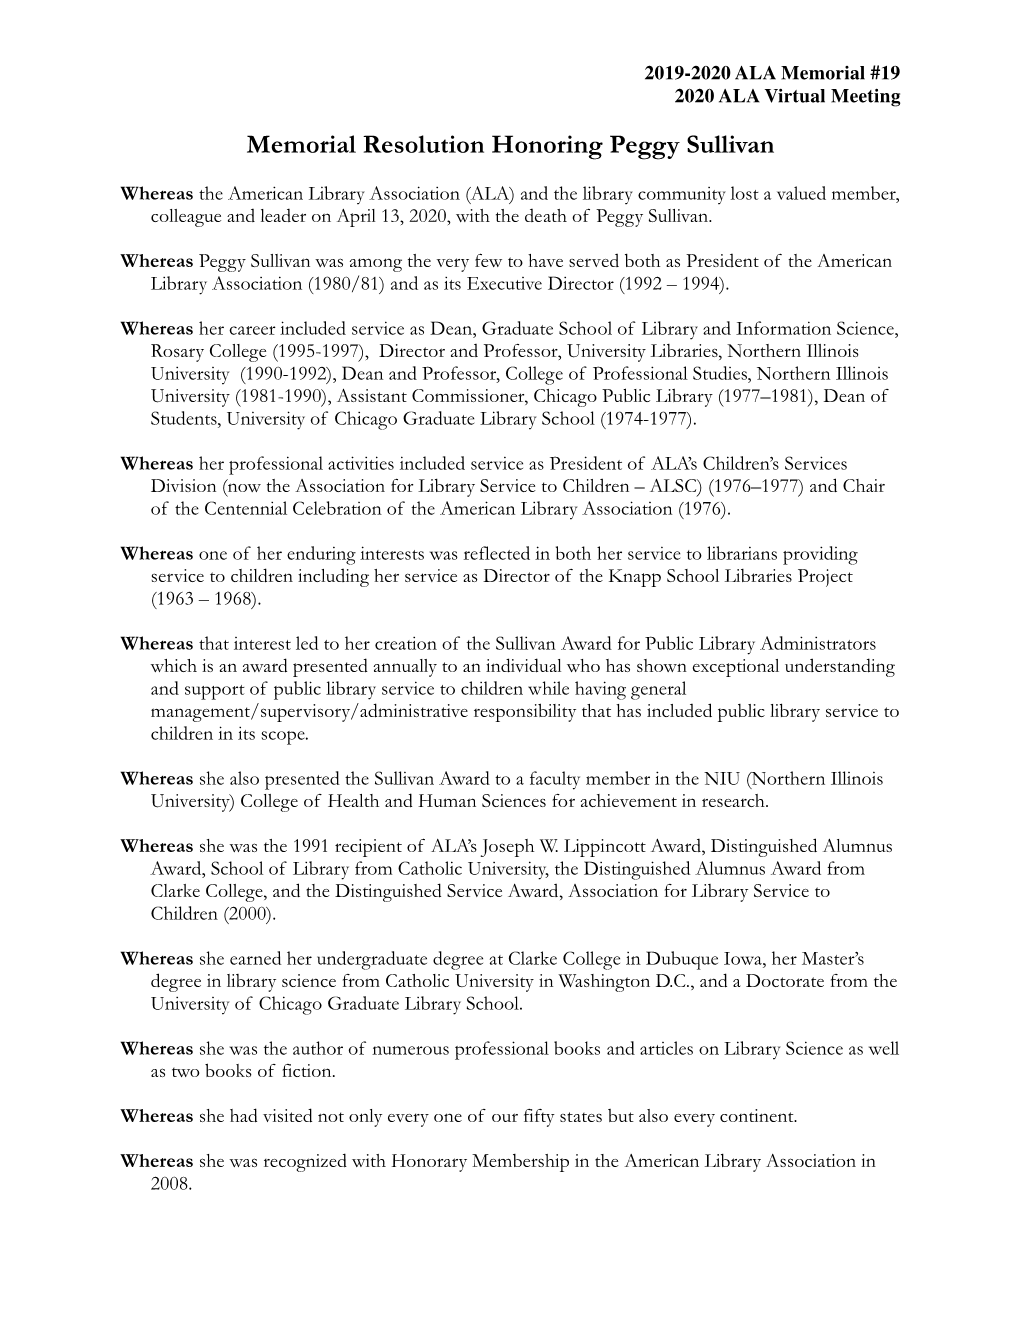 M19 Memorial Resolution Honoring Peggy Sullivan.Pdf